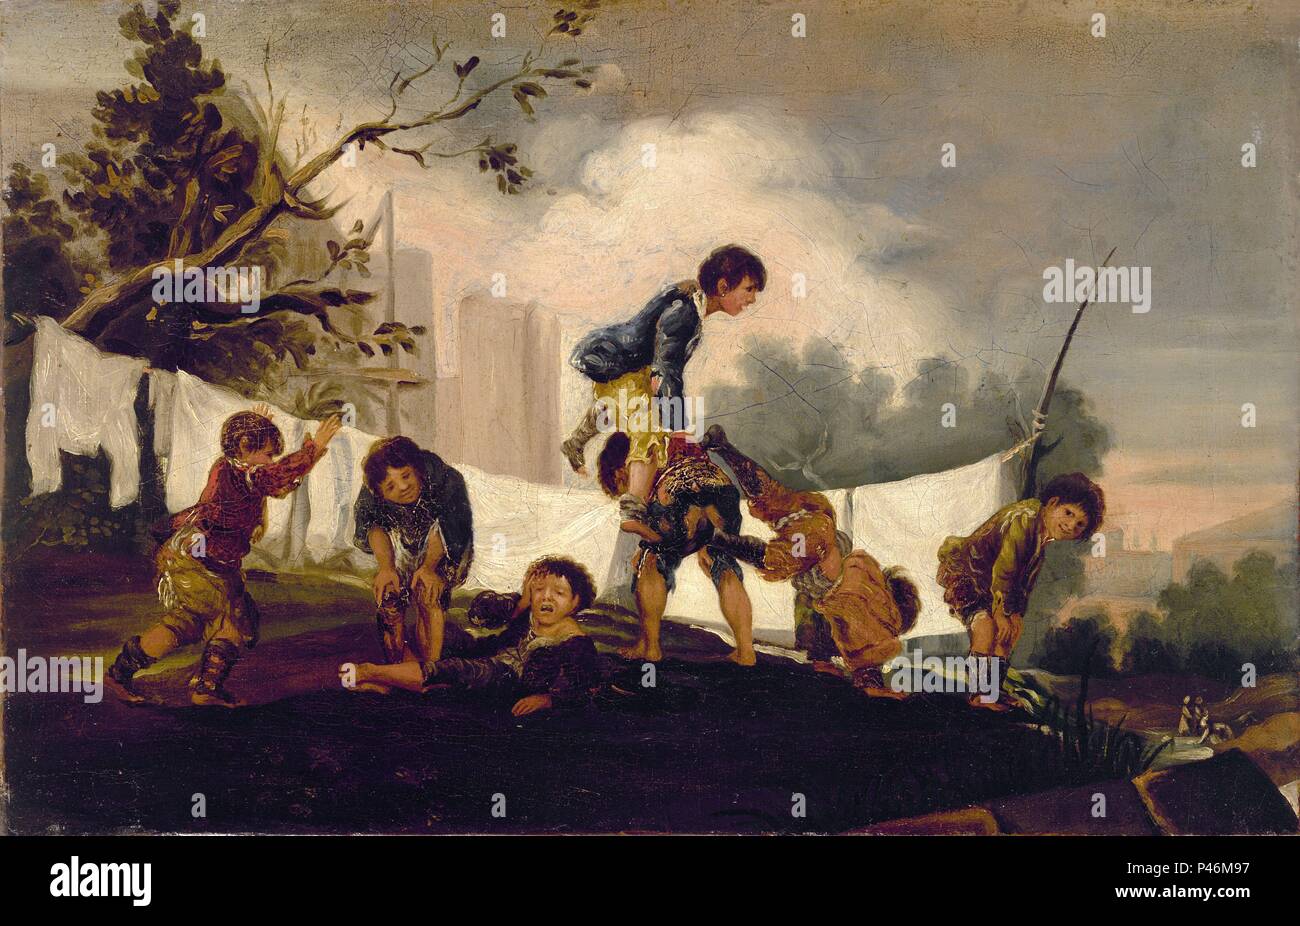 JUEGO DE NIÑOS: EL PASO O EL MARRO 1780 O/l, 30.9 x 43.9- DONACION DE IGNACIO TARAZONA EN 1926, NºINV.579. Autore: Francisco de Goya (1746-1828). Posizione: Academia de San Carlos, VALENCIA, Spagna. Foto Stock